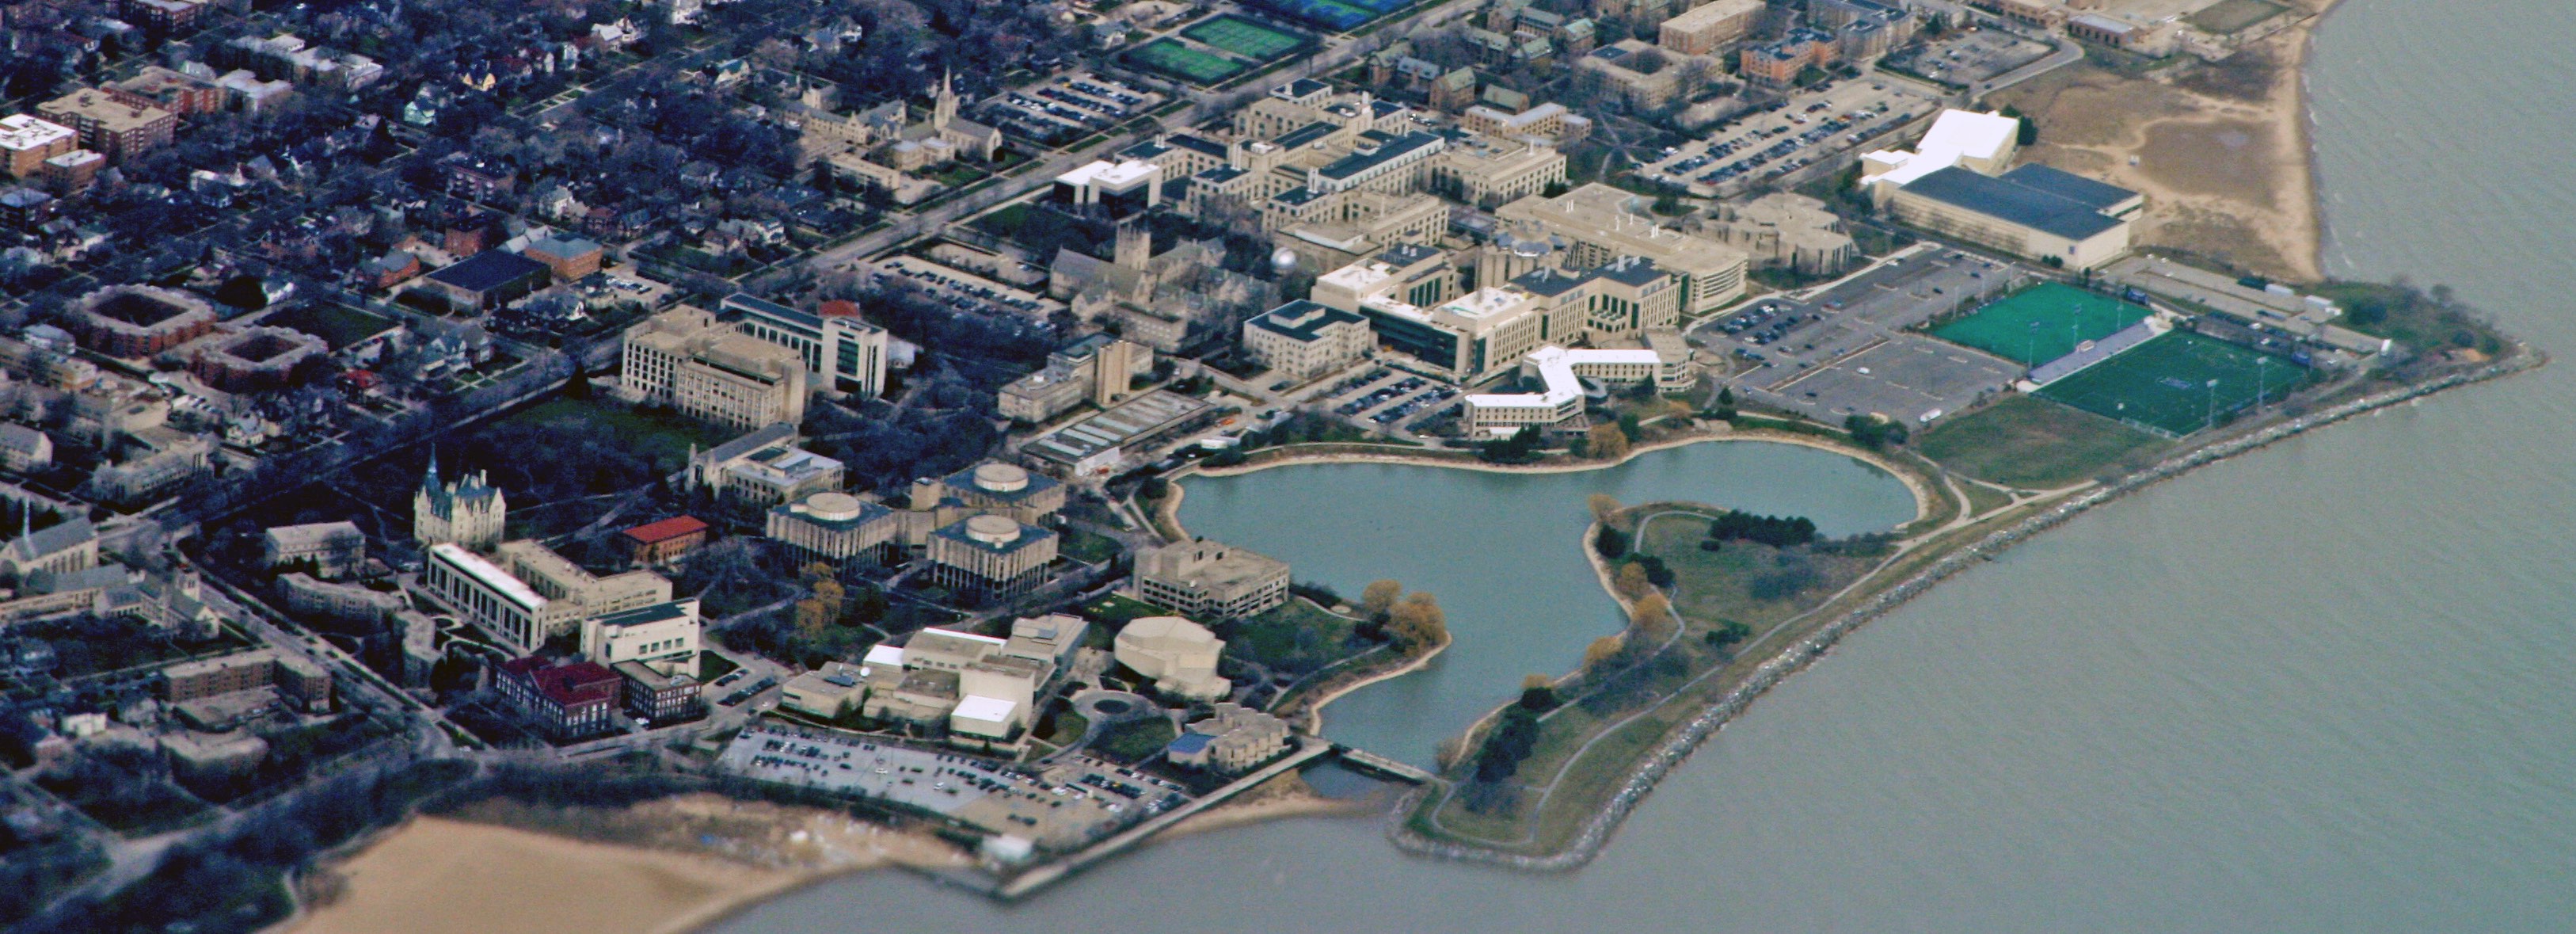 Aerial image of Northwestern's campus.